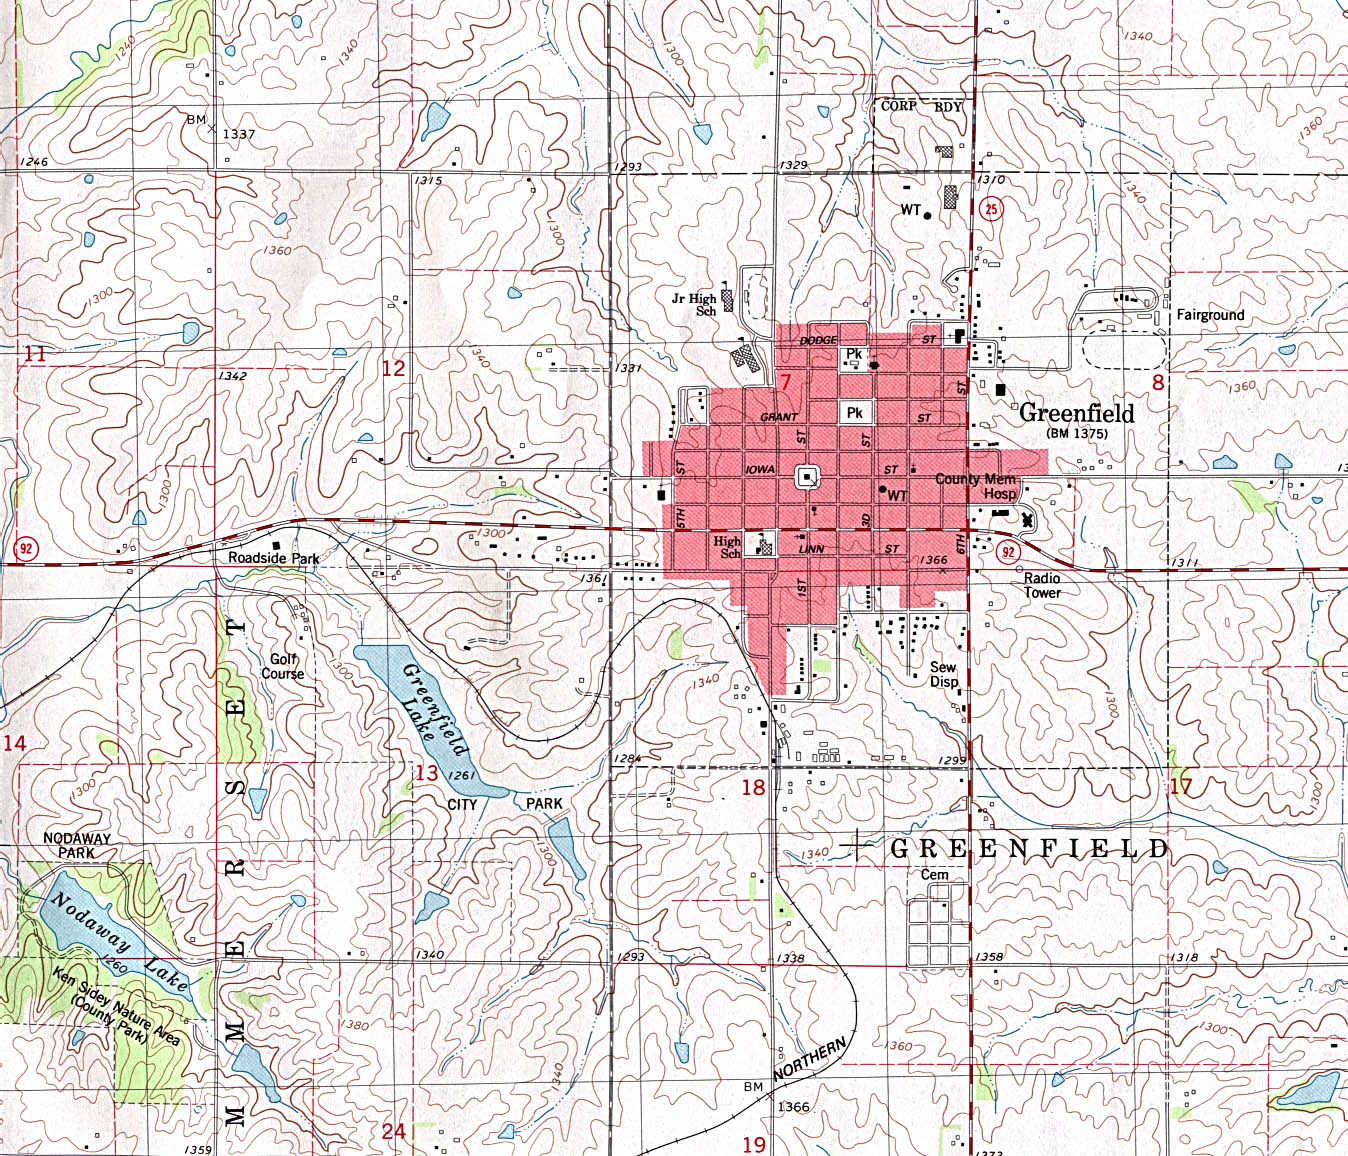 Mapa Topográfico de la Ciudad de Greenfield, Iowa, Estados Unidos